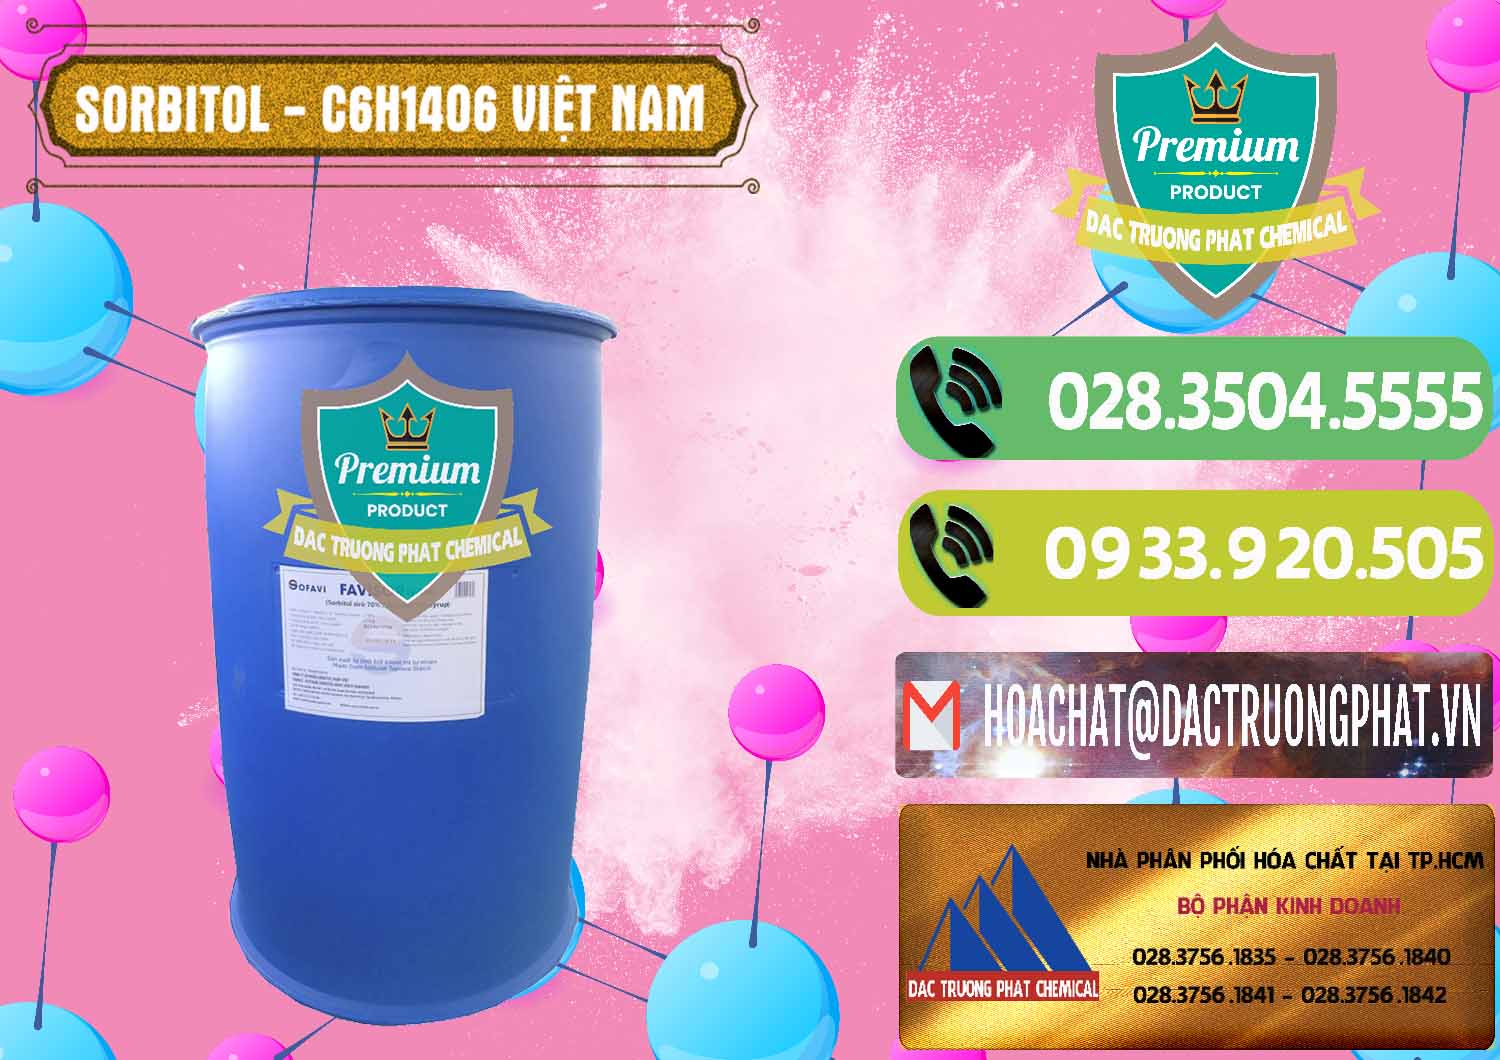 Công ty chuyên kinh doanh ( cung cấp ) Sorbitol - C6H14O6 Lỏng 70% Food Grade Việt Nam - 0438 - Nơi chuyên bán và phân phối hóa chất tại TP.HCM - hoachatmientay.vn